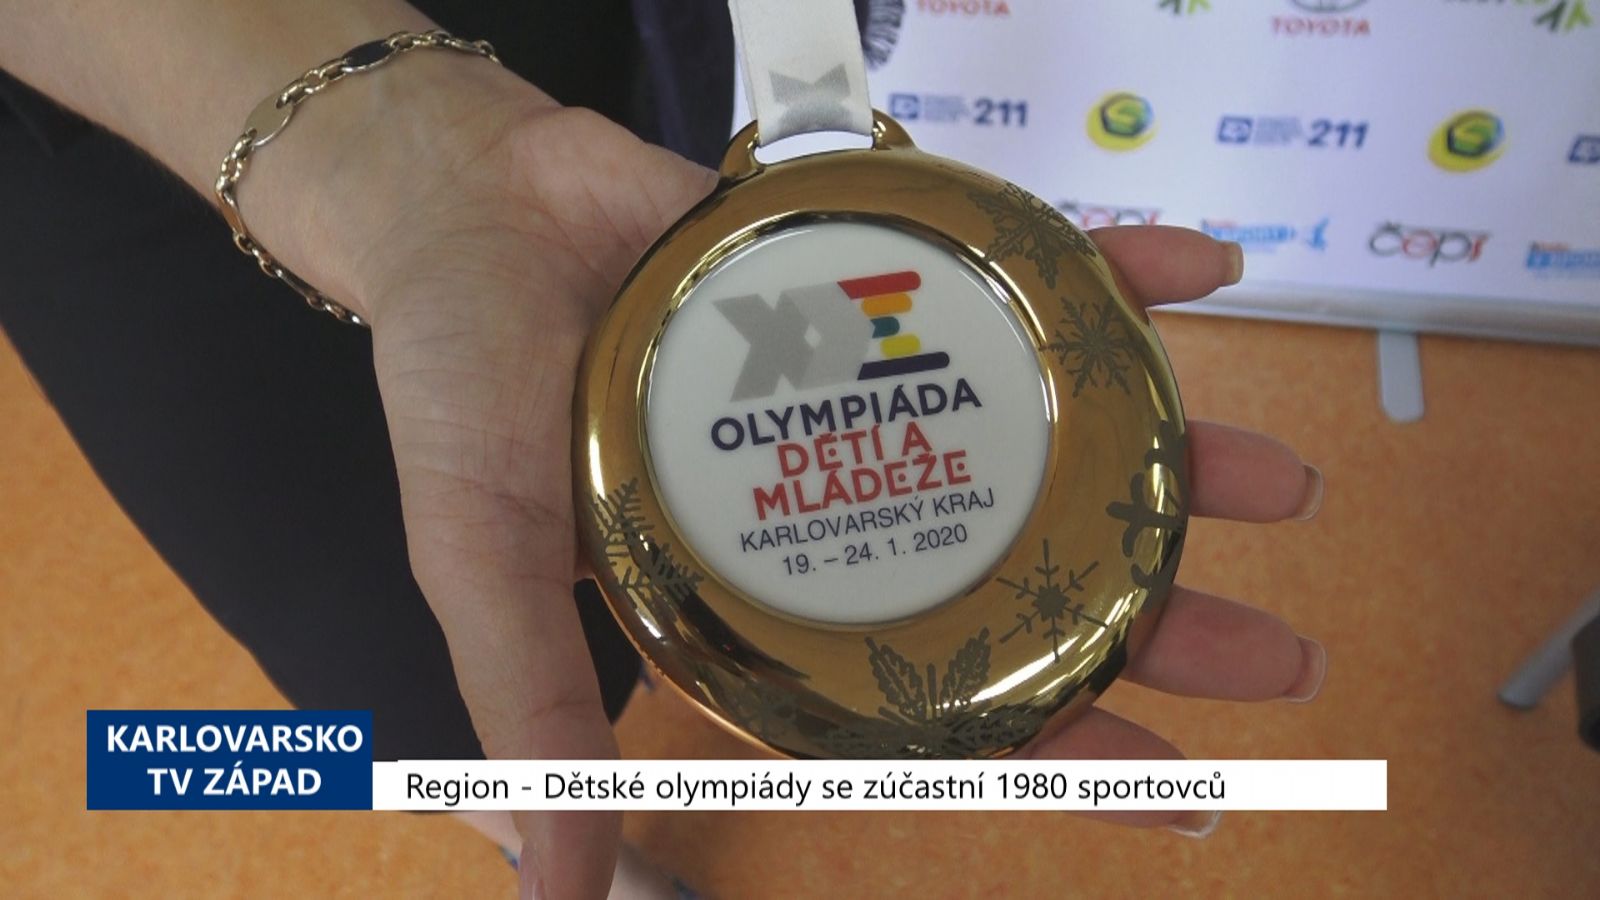 Region: Dětské olympiády se zúčastní 1980 sportovců (TV Západ)